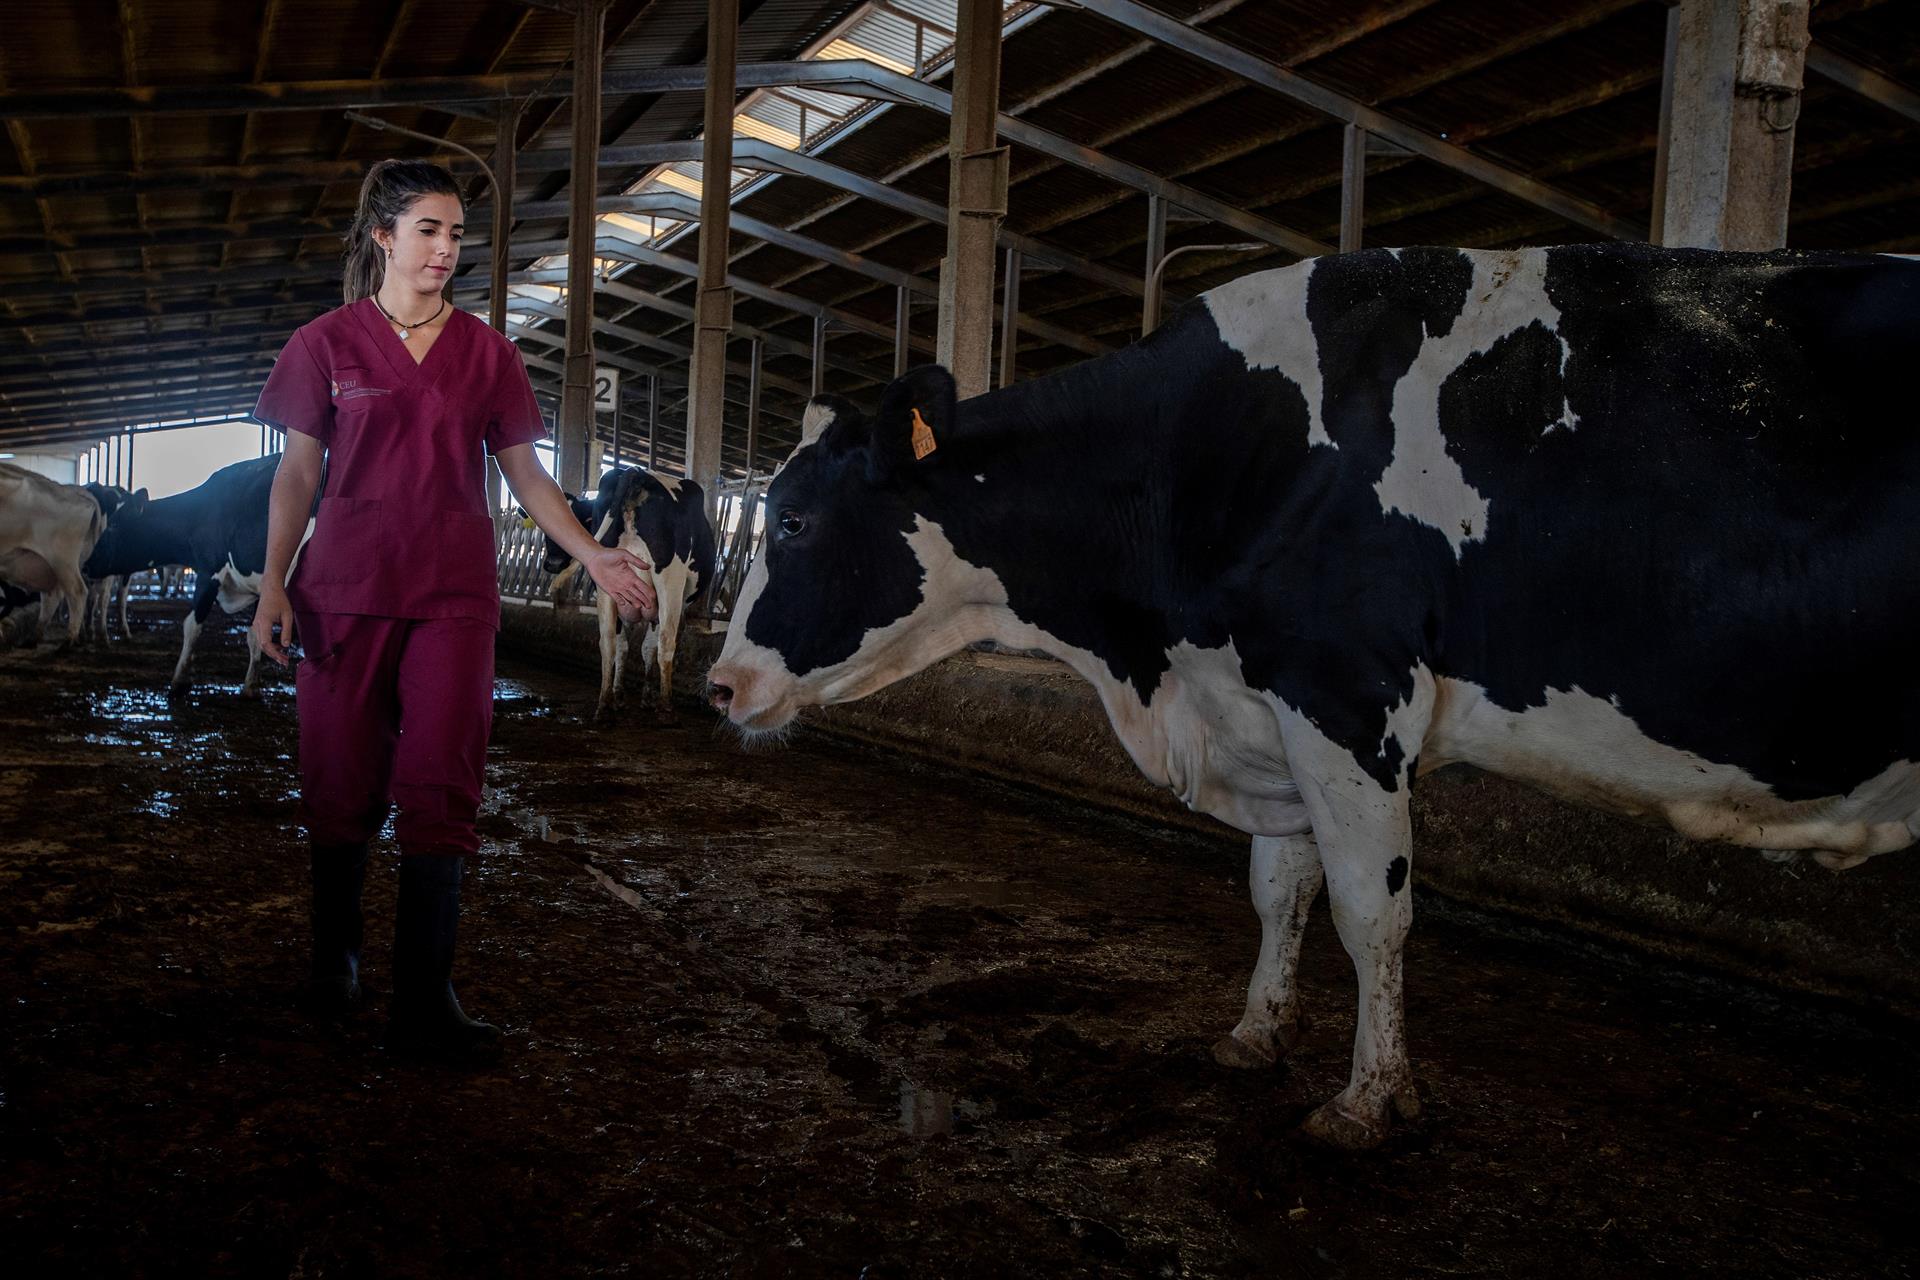 Una veterinaria entre las vacas de una ganadería de vacuno lechero en Jerez de la Frontera (Cádiz). Efeagro/Román Ríos